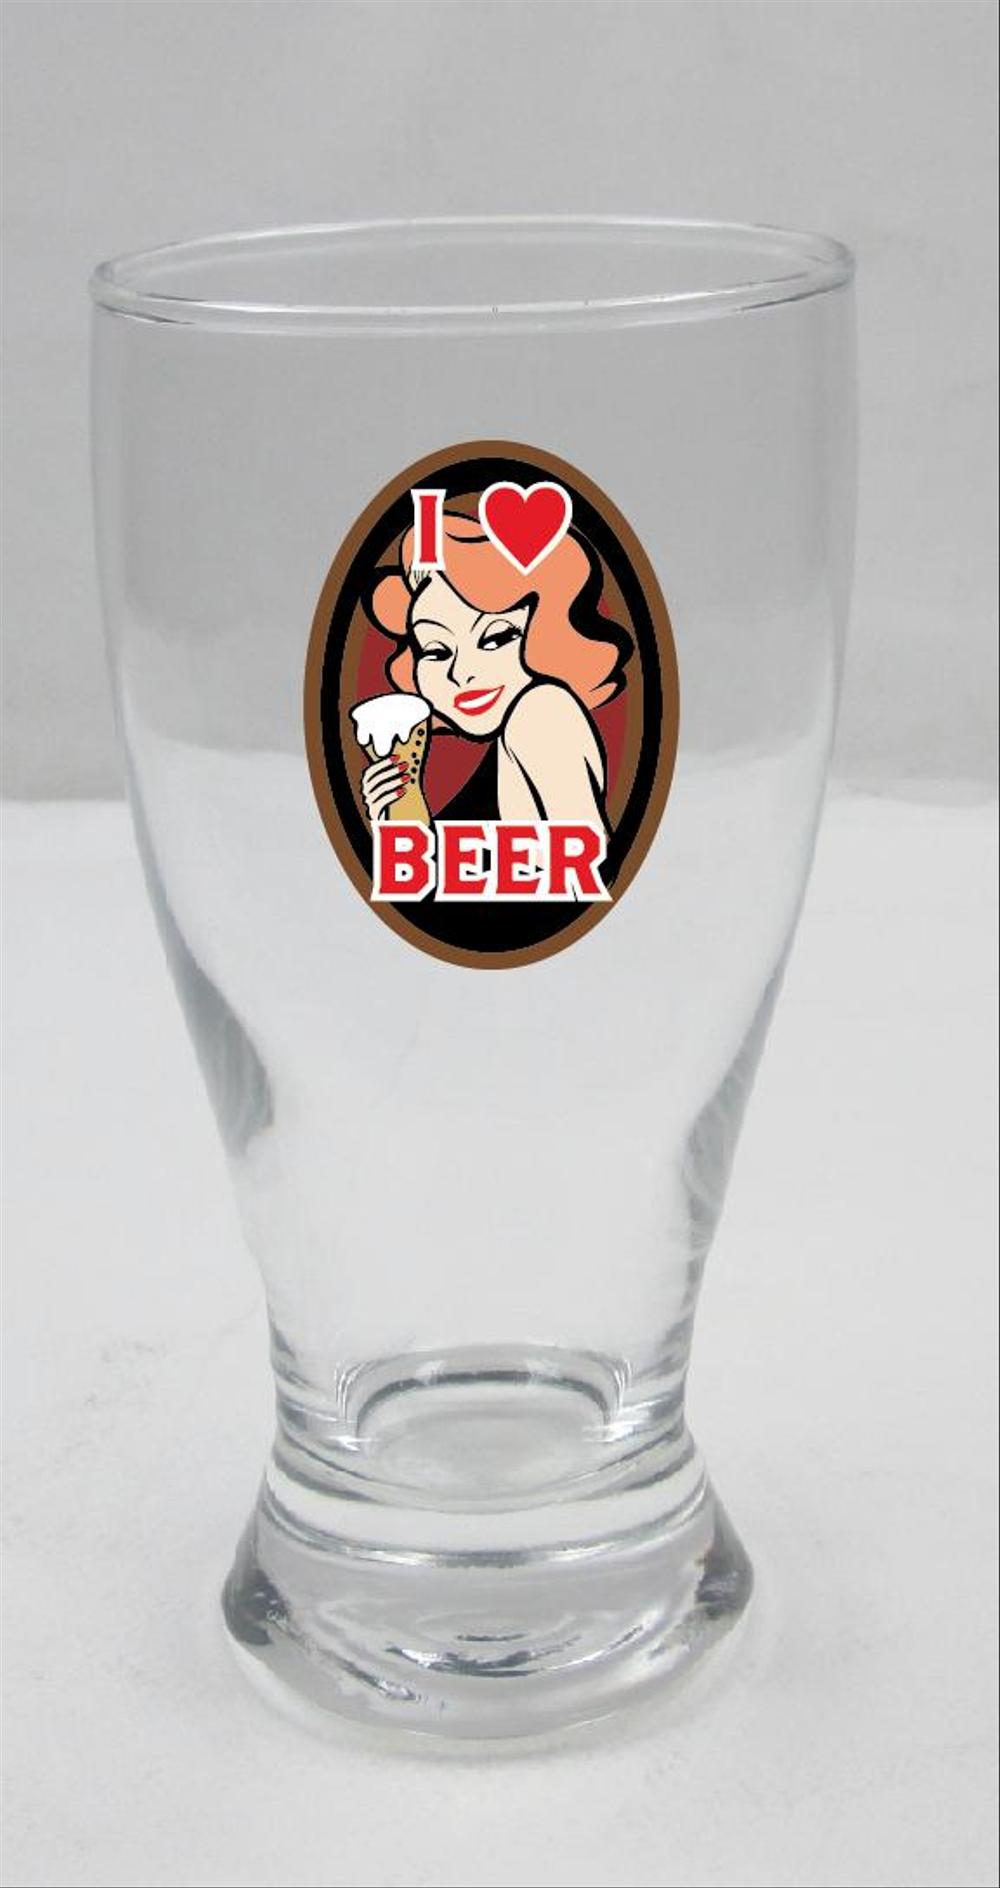 ビールグラスに印刷されるモチーフのオリジナルデザイン